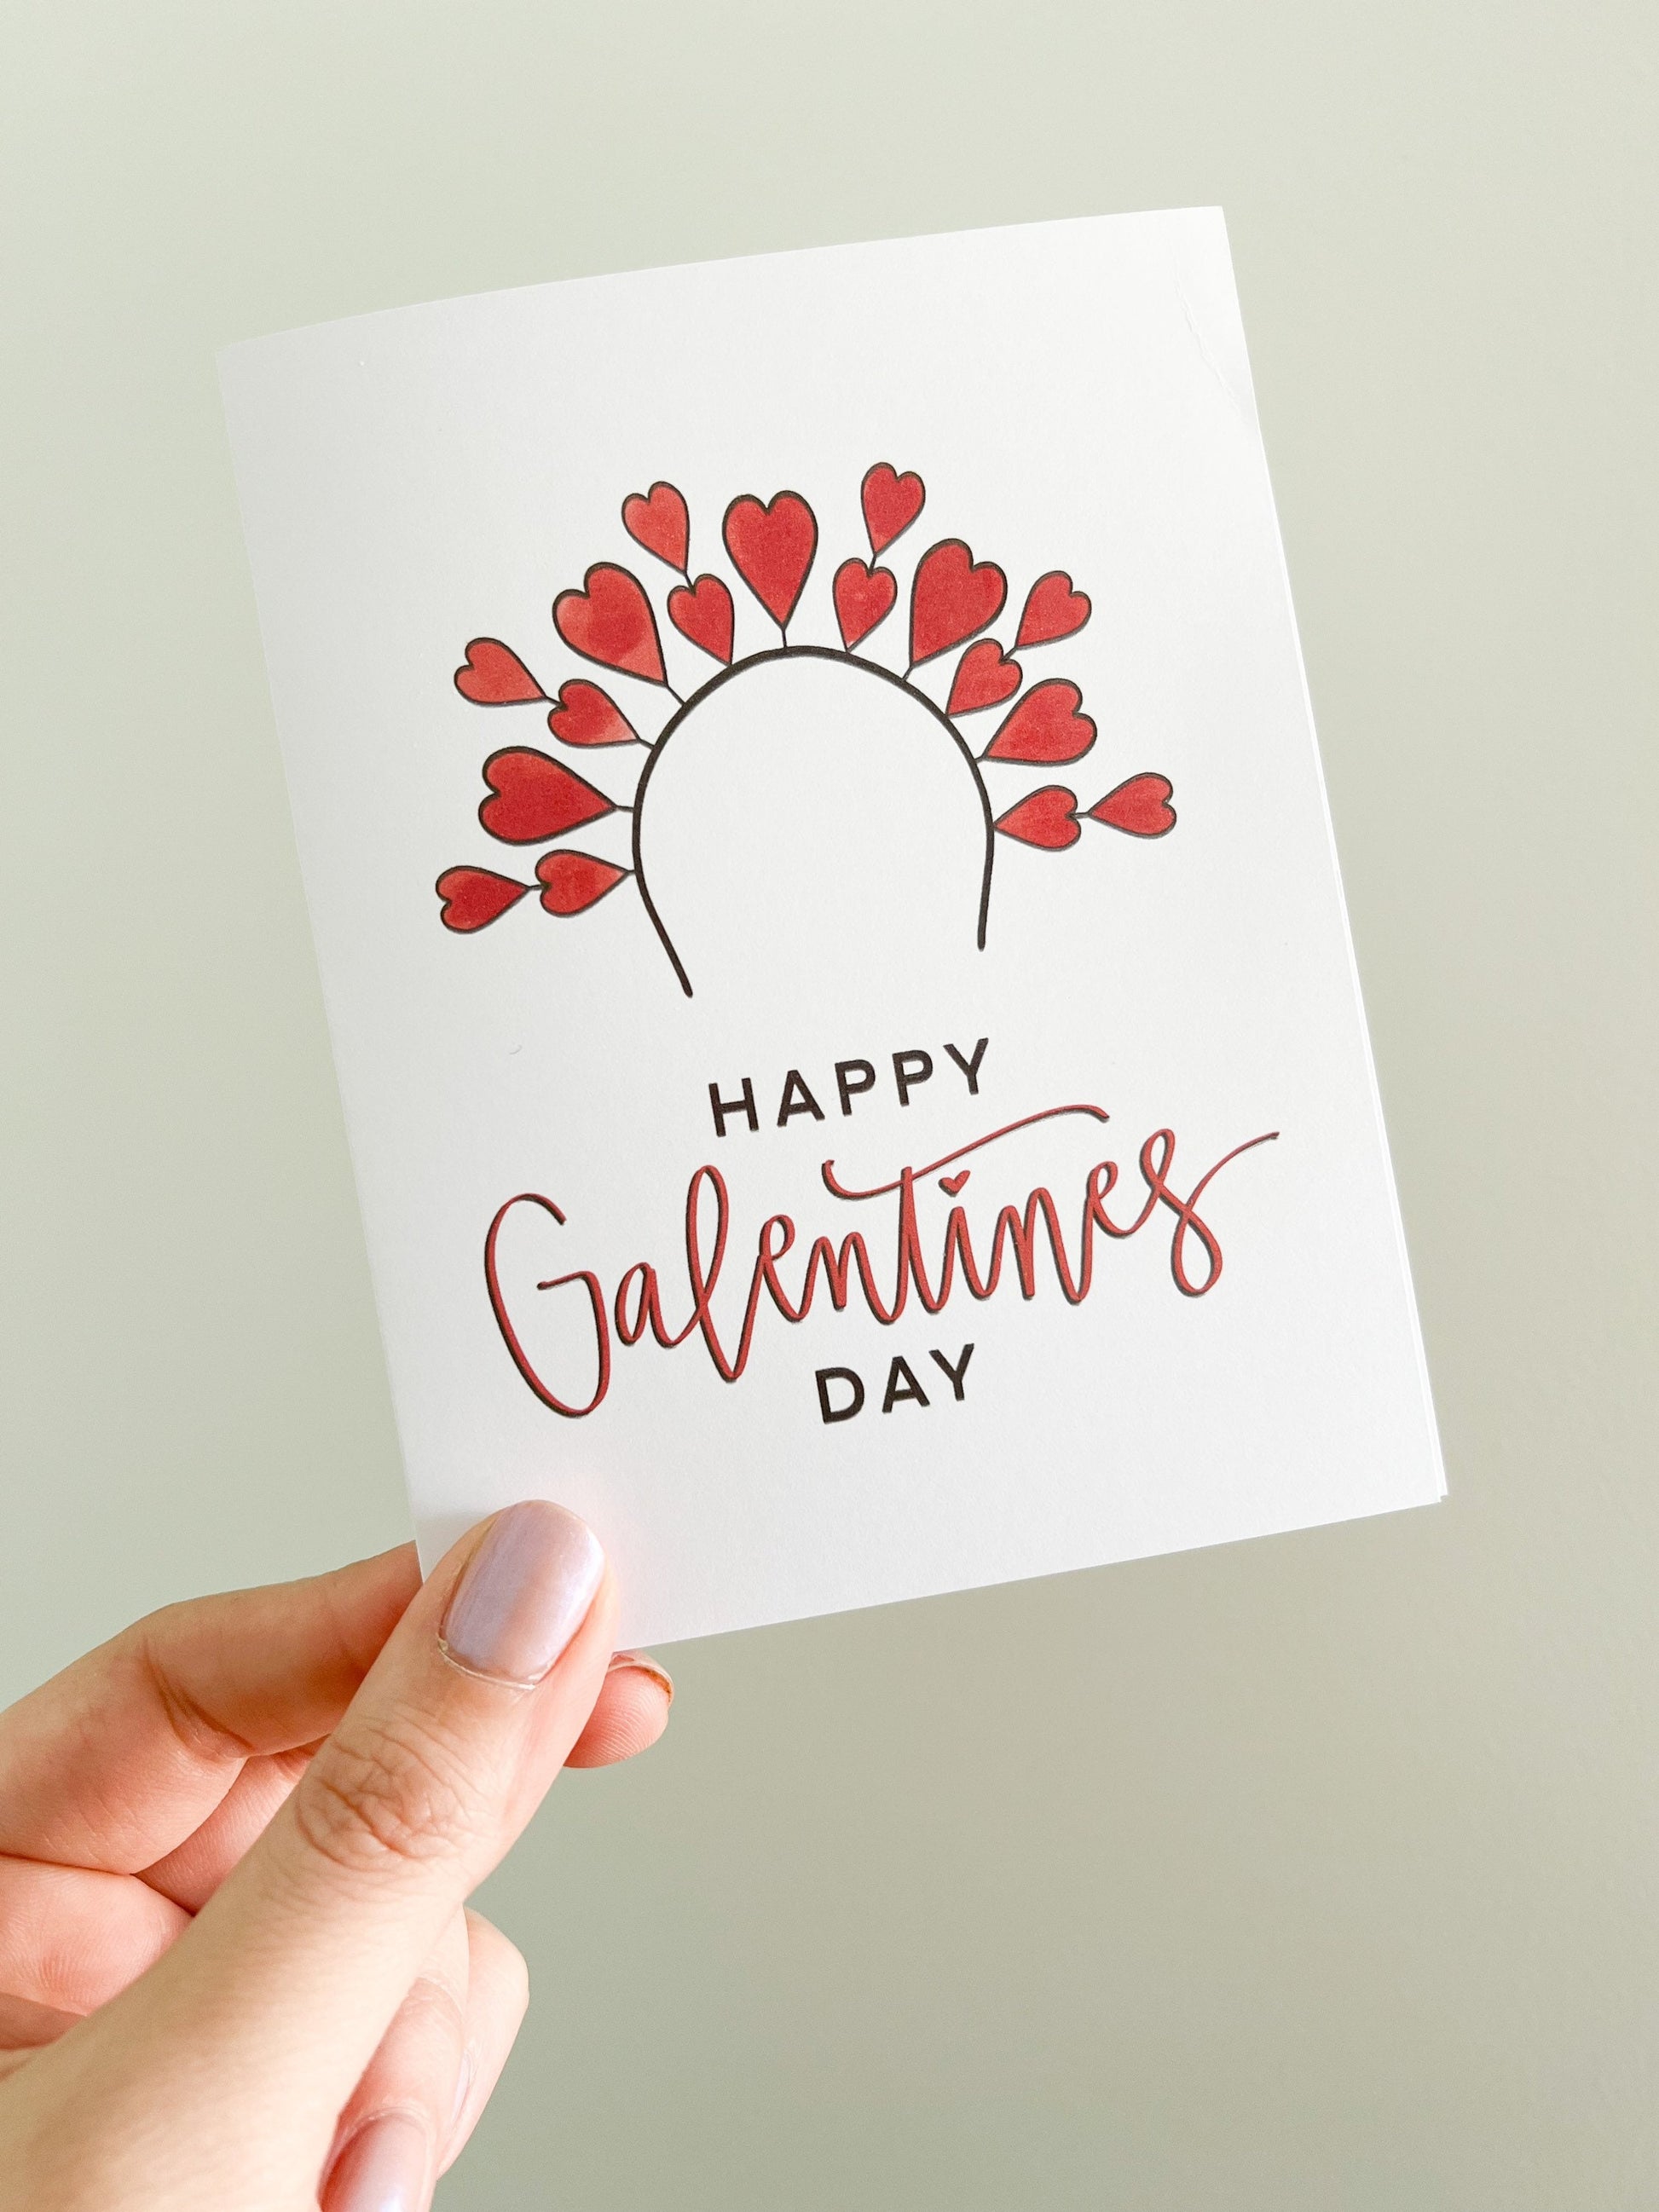 Heart tiara Galentine’s Day - Valentine’s Day card